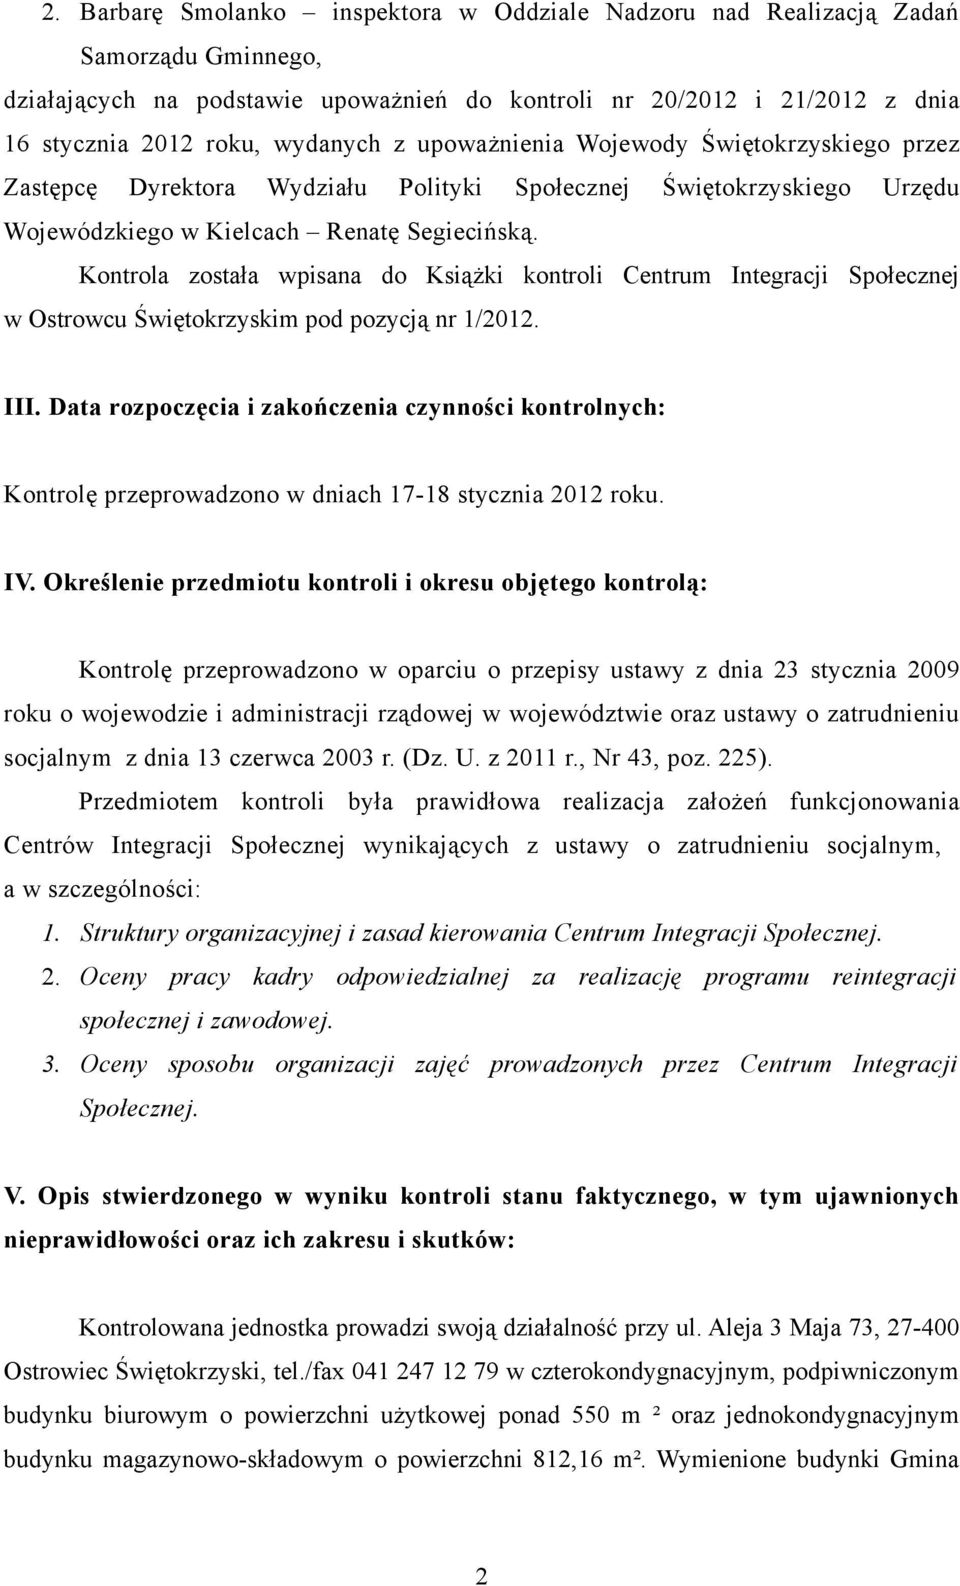 Kontrola została wpisana do Książki kontroli Centrum Integracji Społecznej w Ostrowcu Świętokrzyskim pod pozycją nr 1/2012. III.